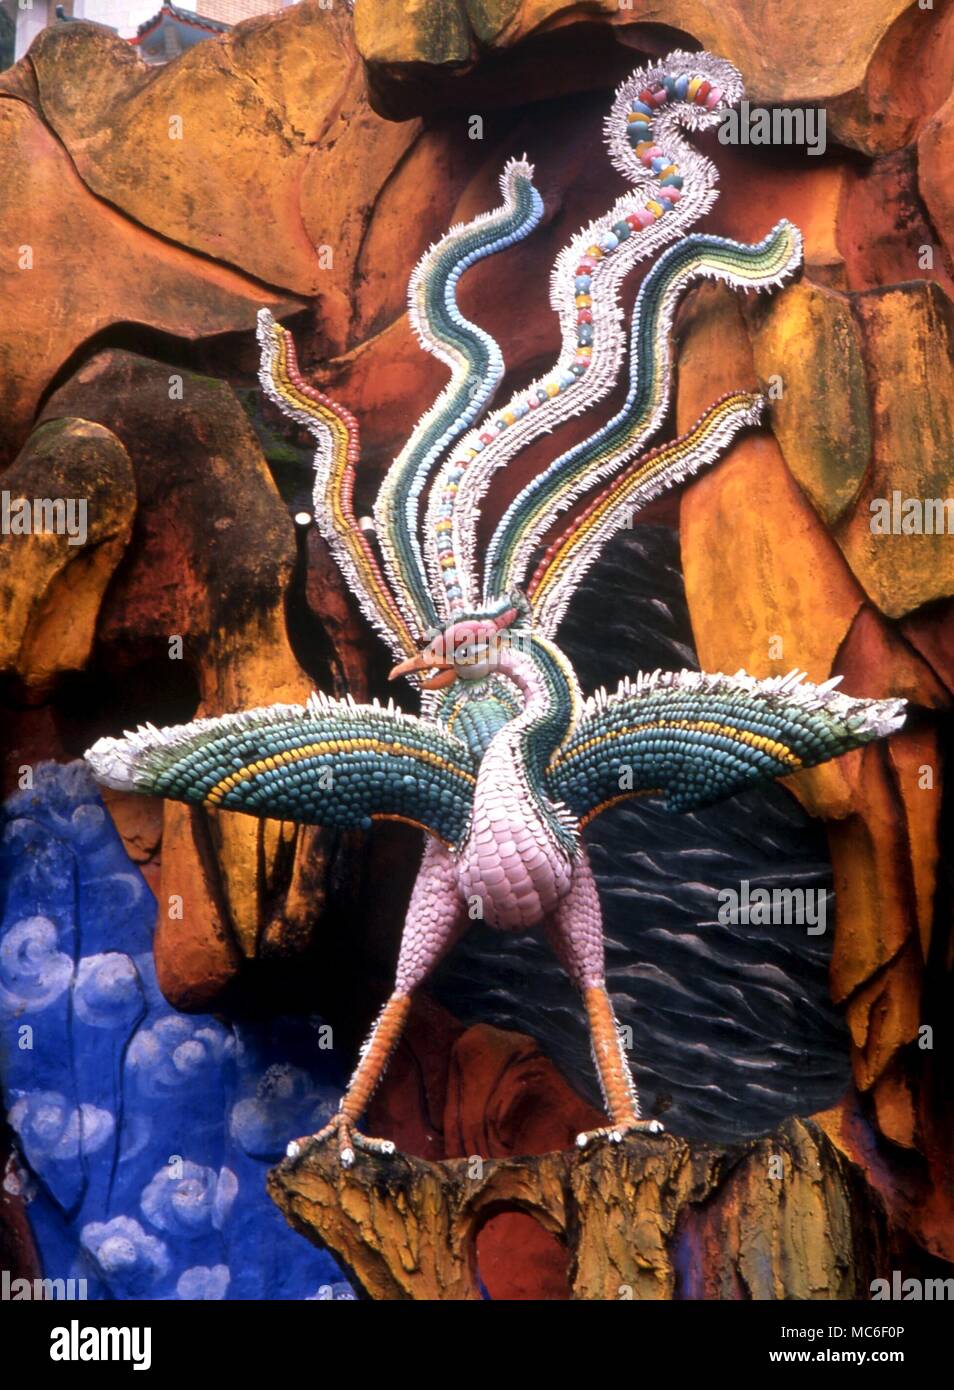 Chinesische Mythologie - der Vogel Phönix PHOENIX ist nur von den Drachen als wichtige mythologischen Kreatur in der chinesischen Mythologie. Keramik in der Haw Paw Gärten (Tiger Balm Gardens) Hong Kong Stockfoto